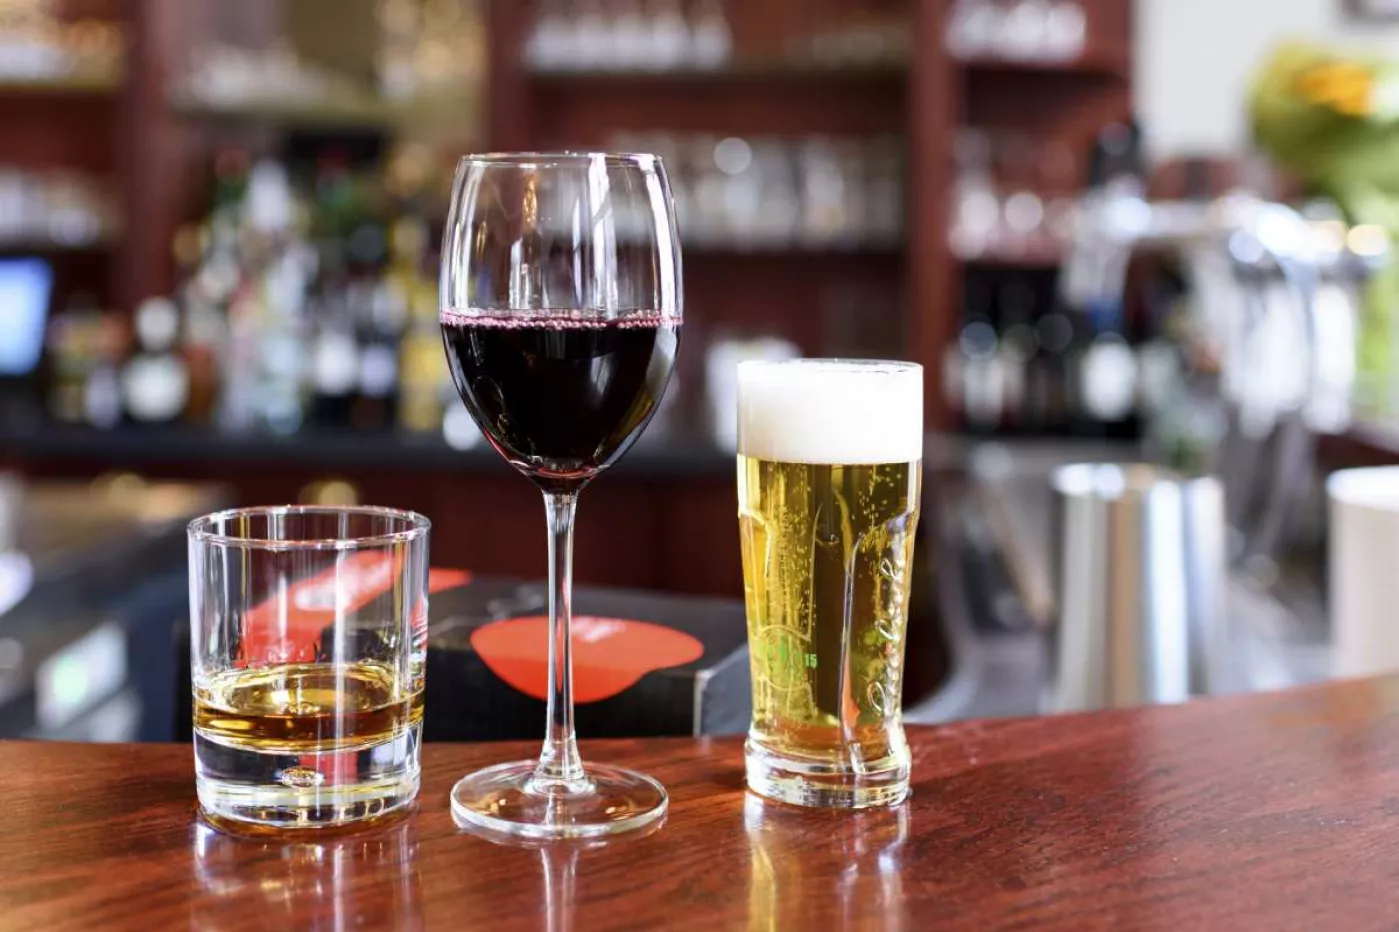 La revisión de 'Nature' confirma que hay evidencia sólida para la asociación entre el consumo de alcohol y el riesgo de cáncer de colon, recto, mama, esófago, cabeza y cuello e hígado.